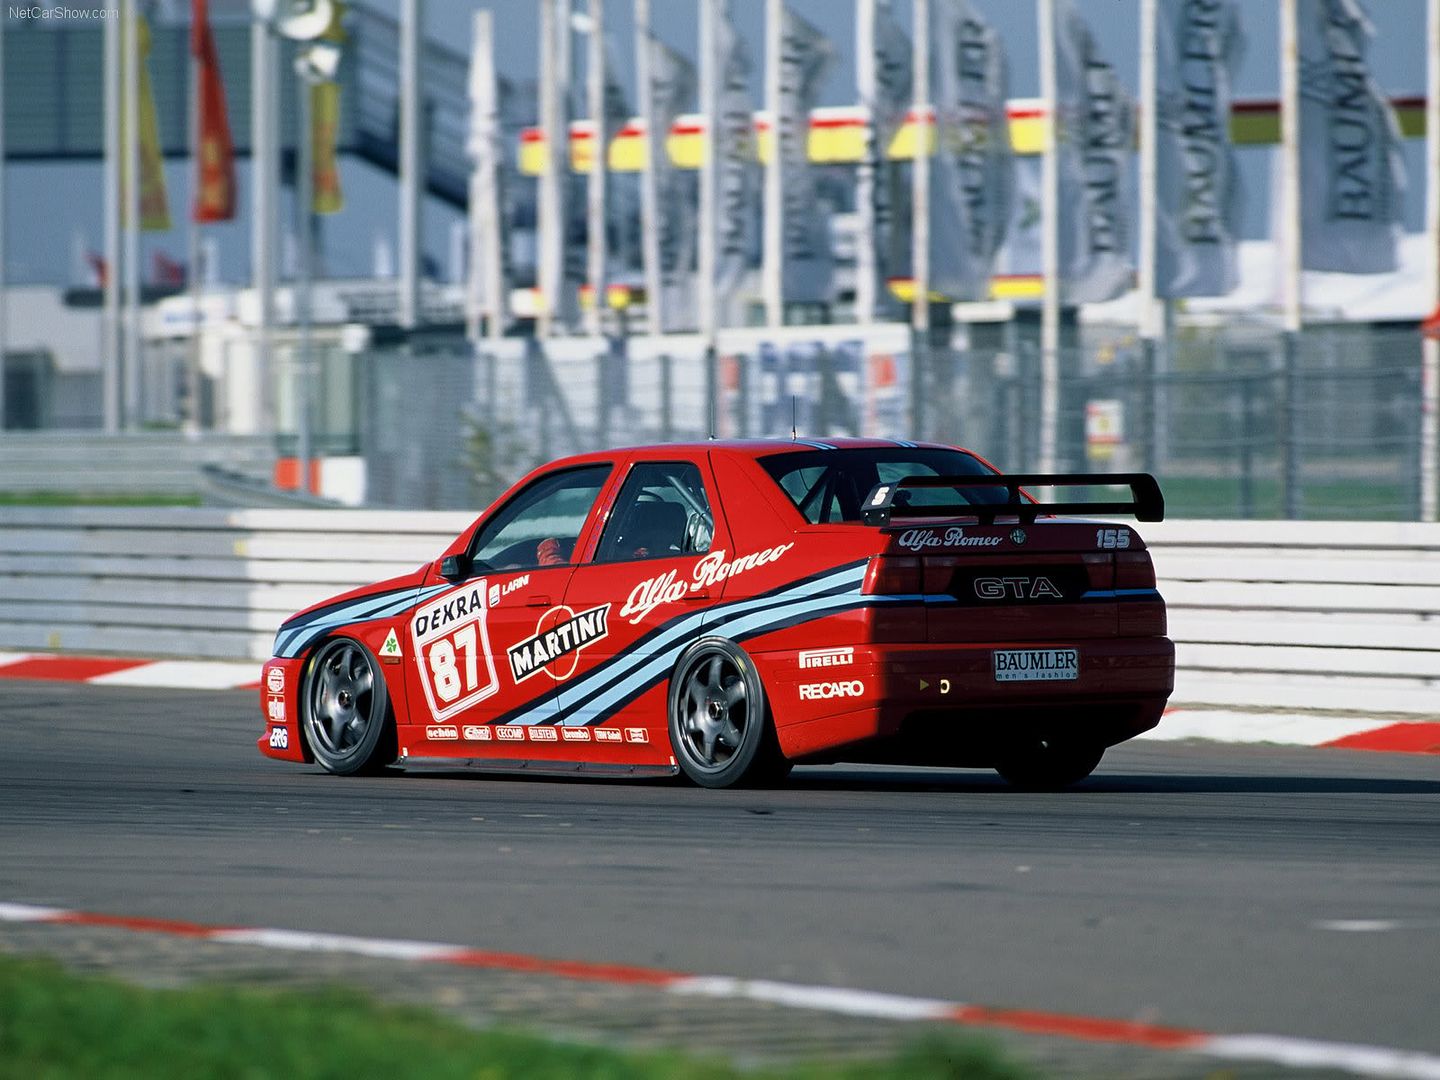 Alfa_Romeo-155_25_V6_TI_DTM_1993_1600x1200_wallpaper_02.jpg